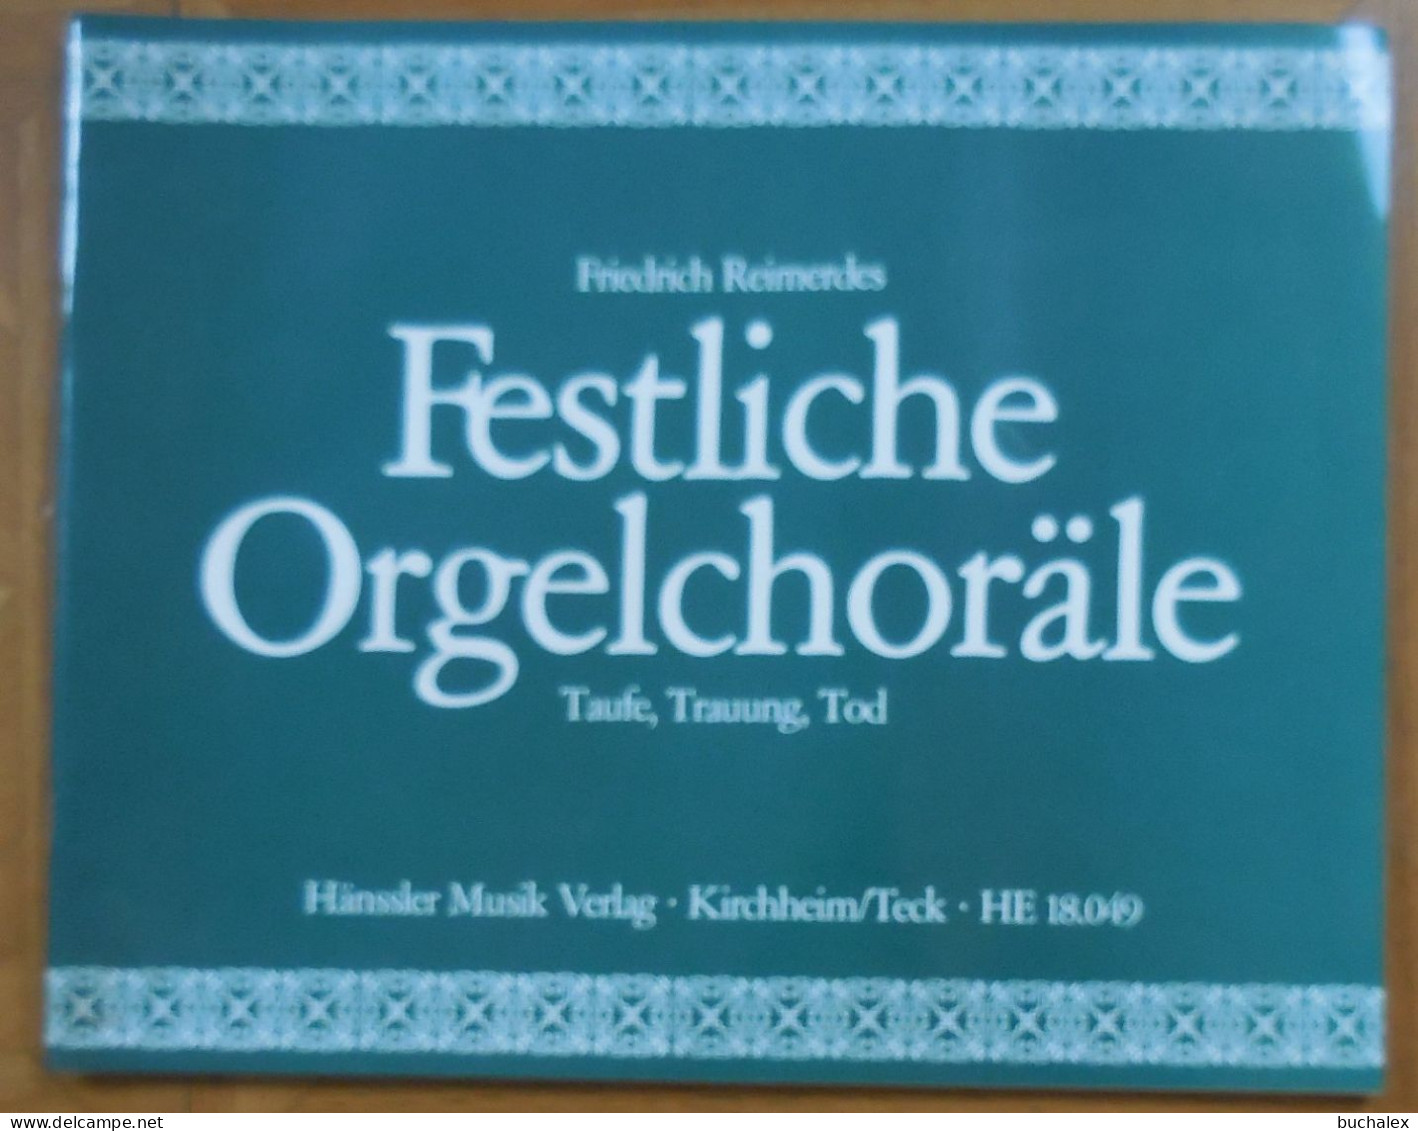 Festliche Orgelchoräle. Taufe, Trauung, Tod - Music